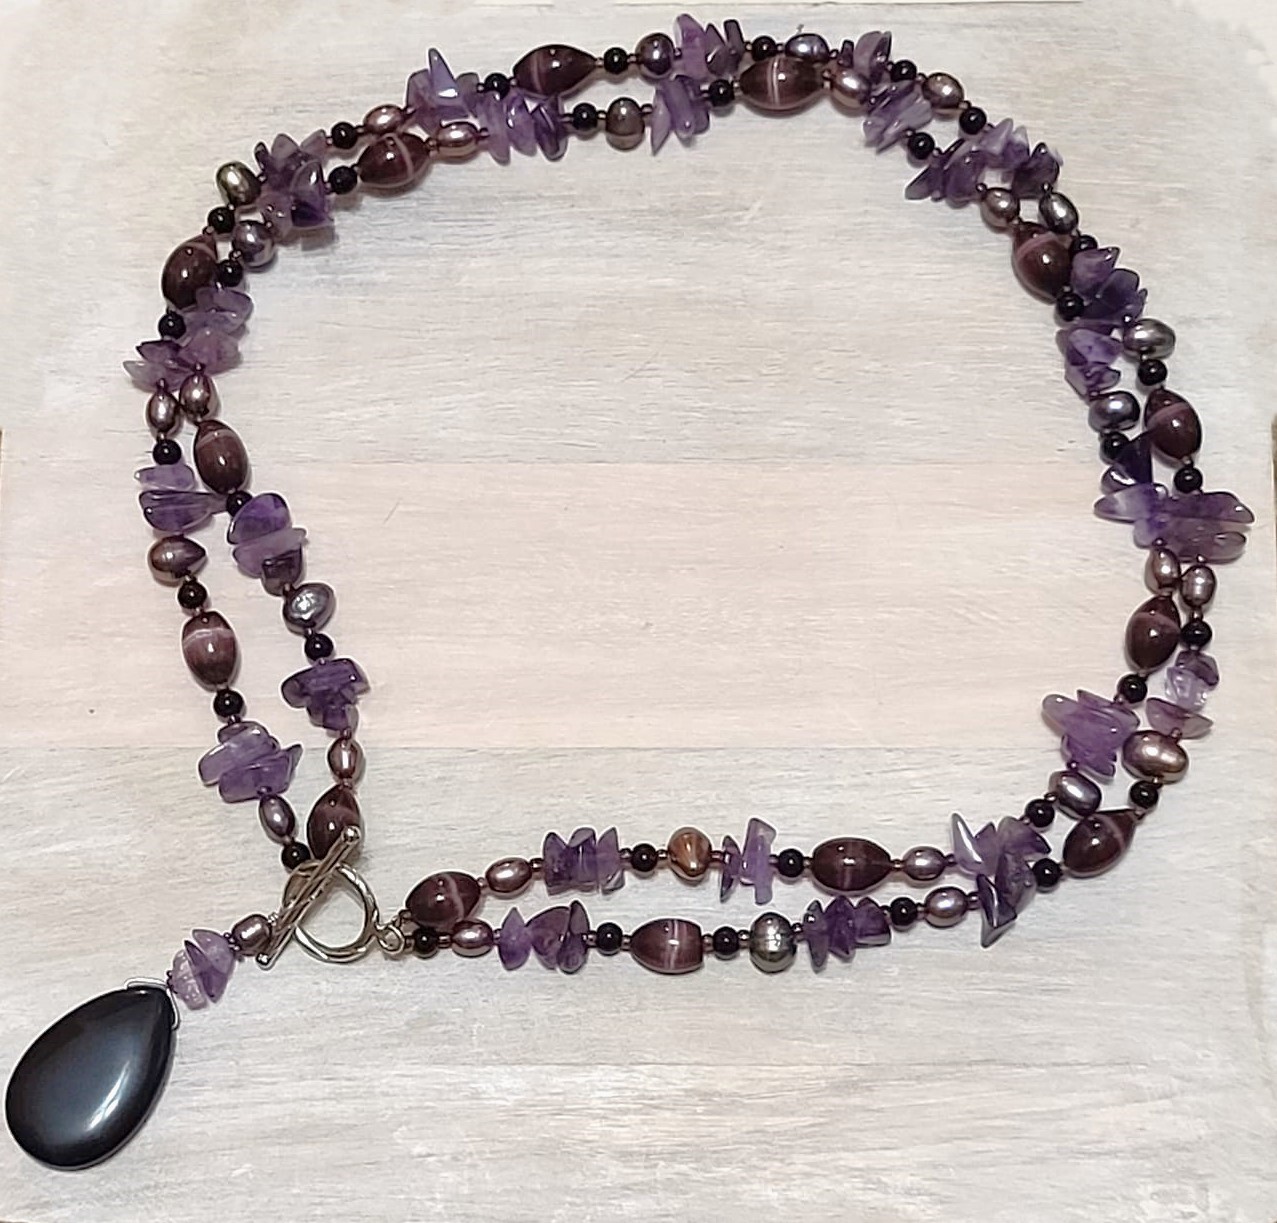 Amethyst lariat necklace, black onyx gemstone,cats eye handcraft